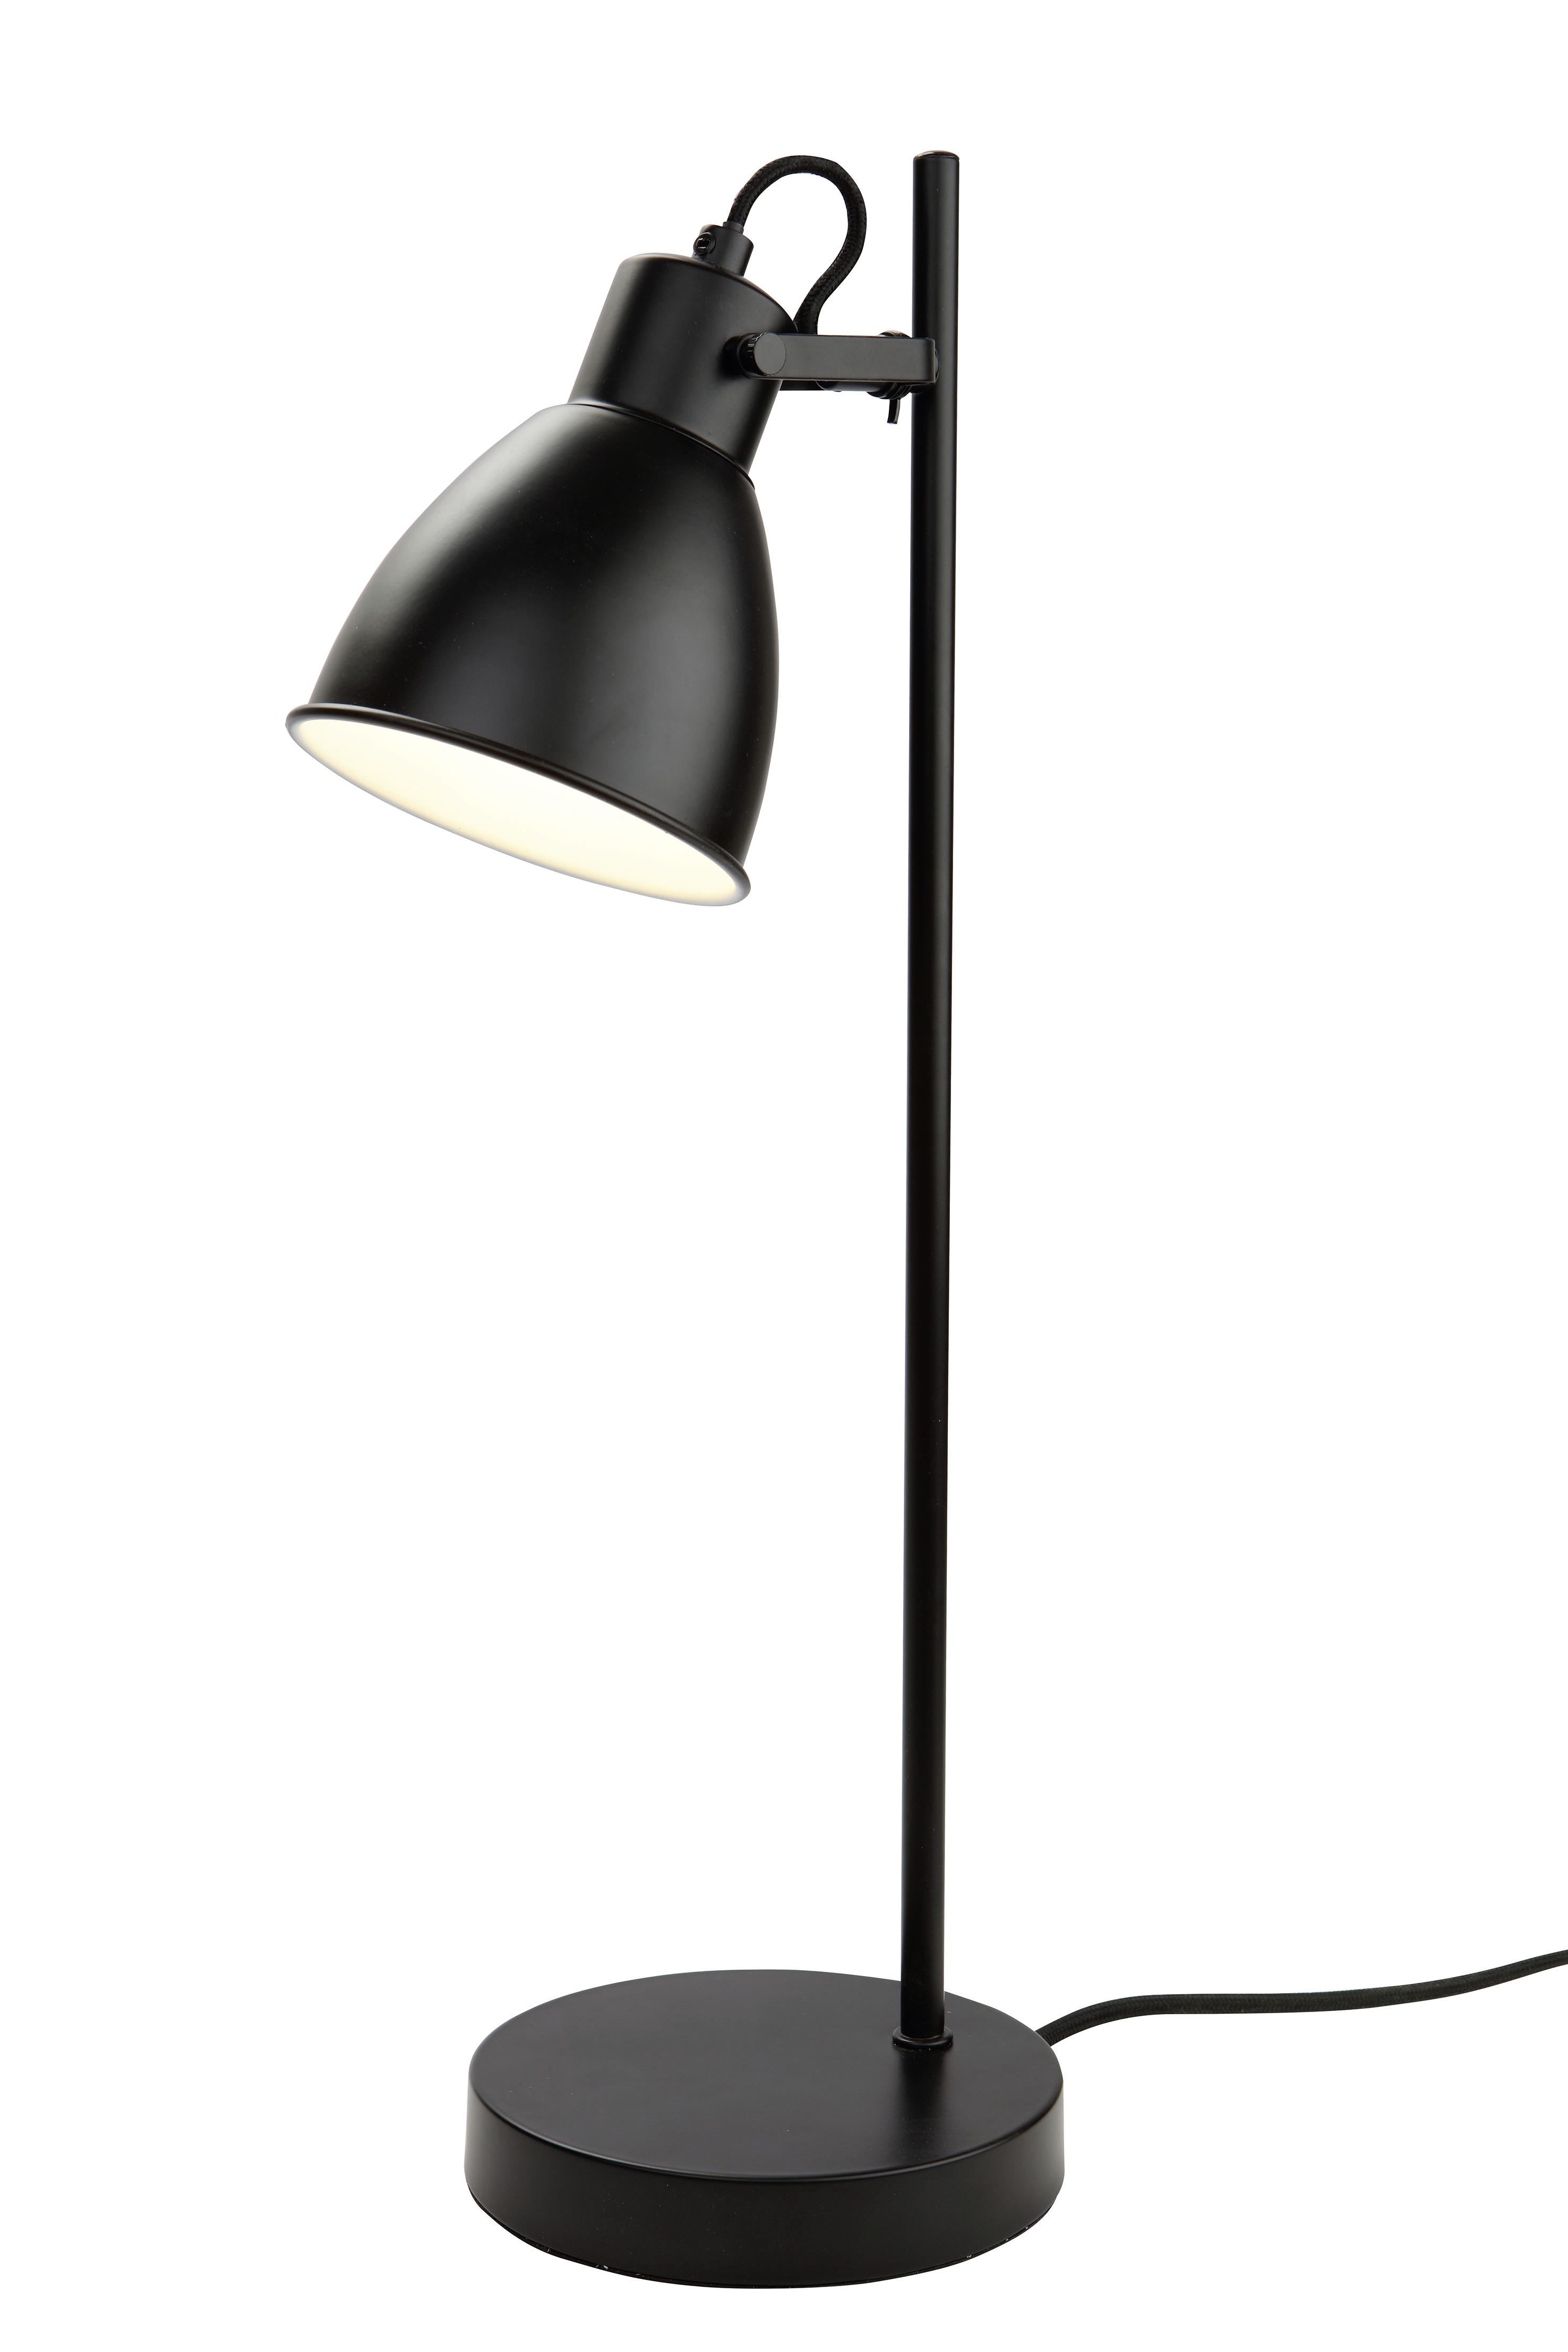 STOLNÁ LAMPA, E27, 24,7/50,5 cm  - čierna, Lifestyle, kov (24,7/50,5cm) - Marama